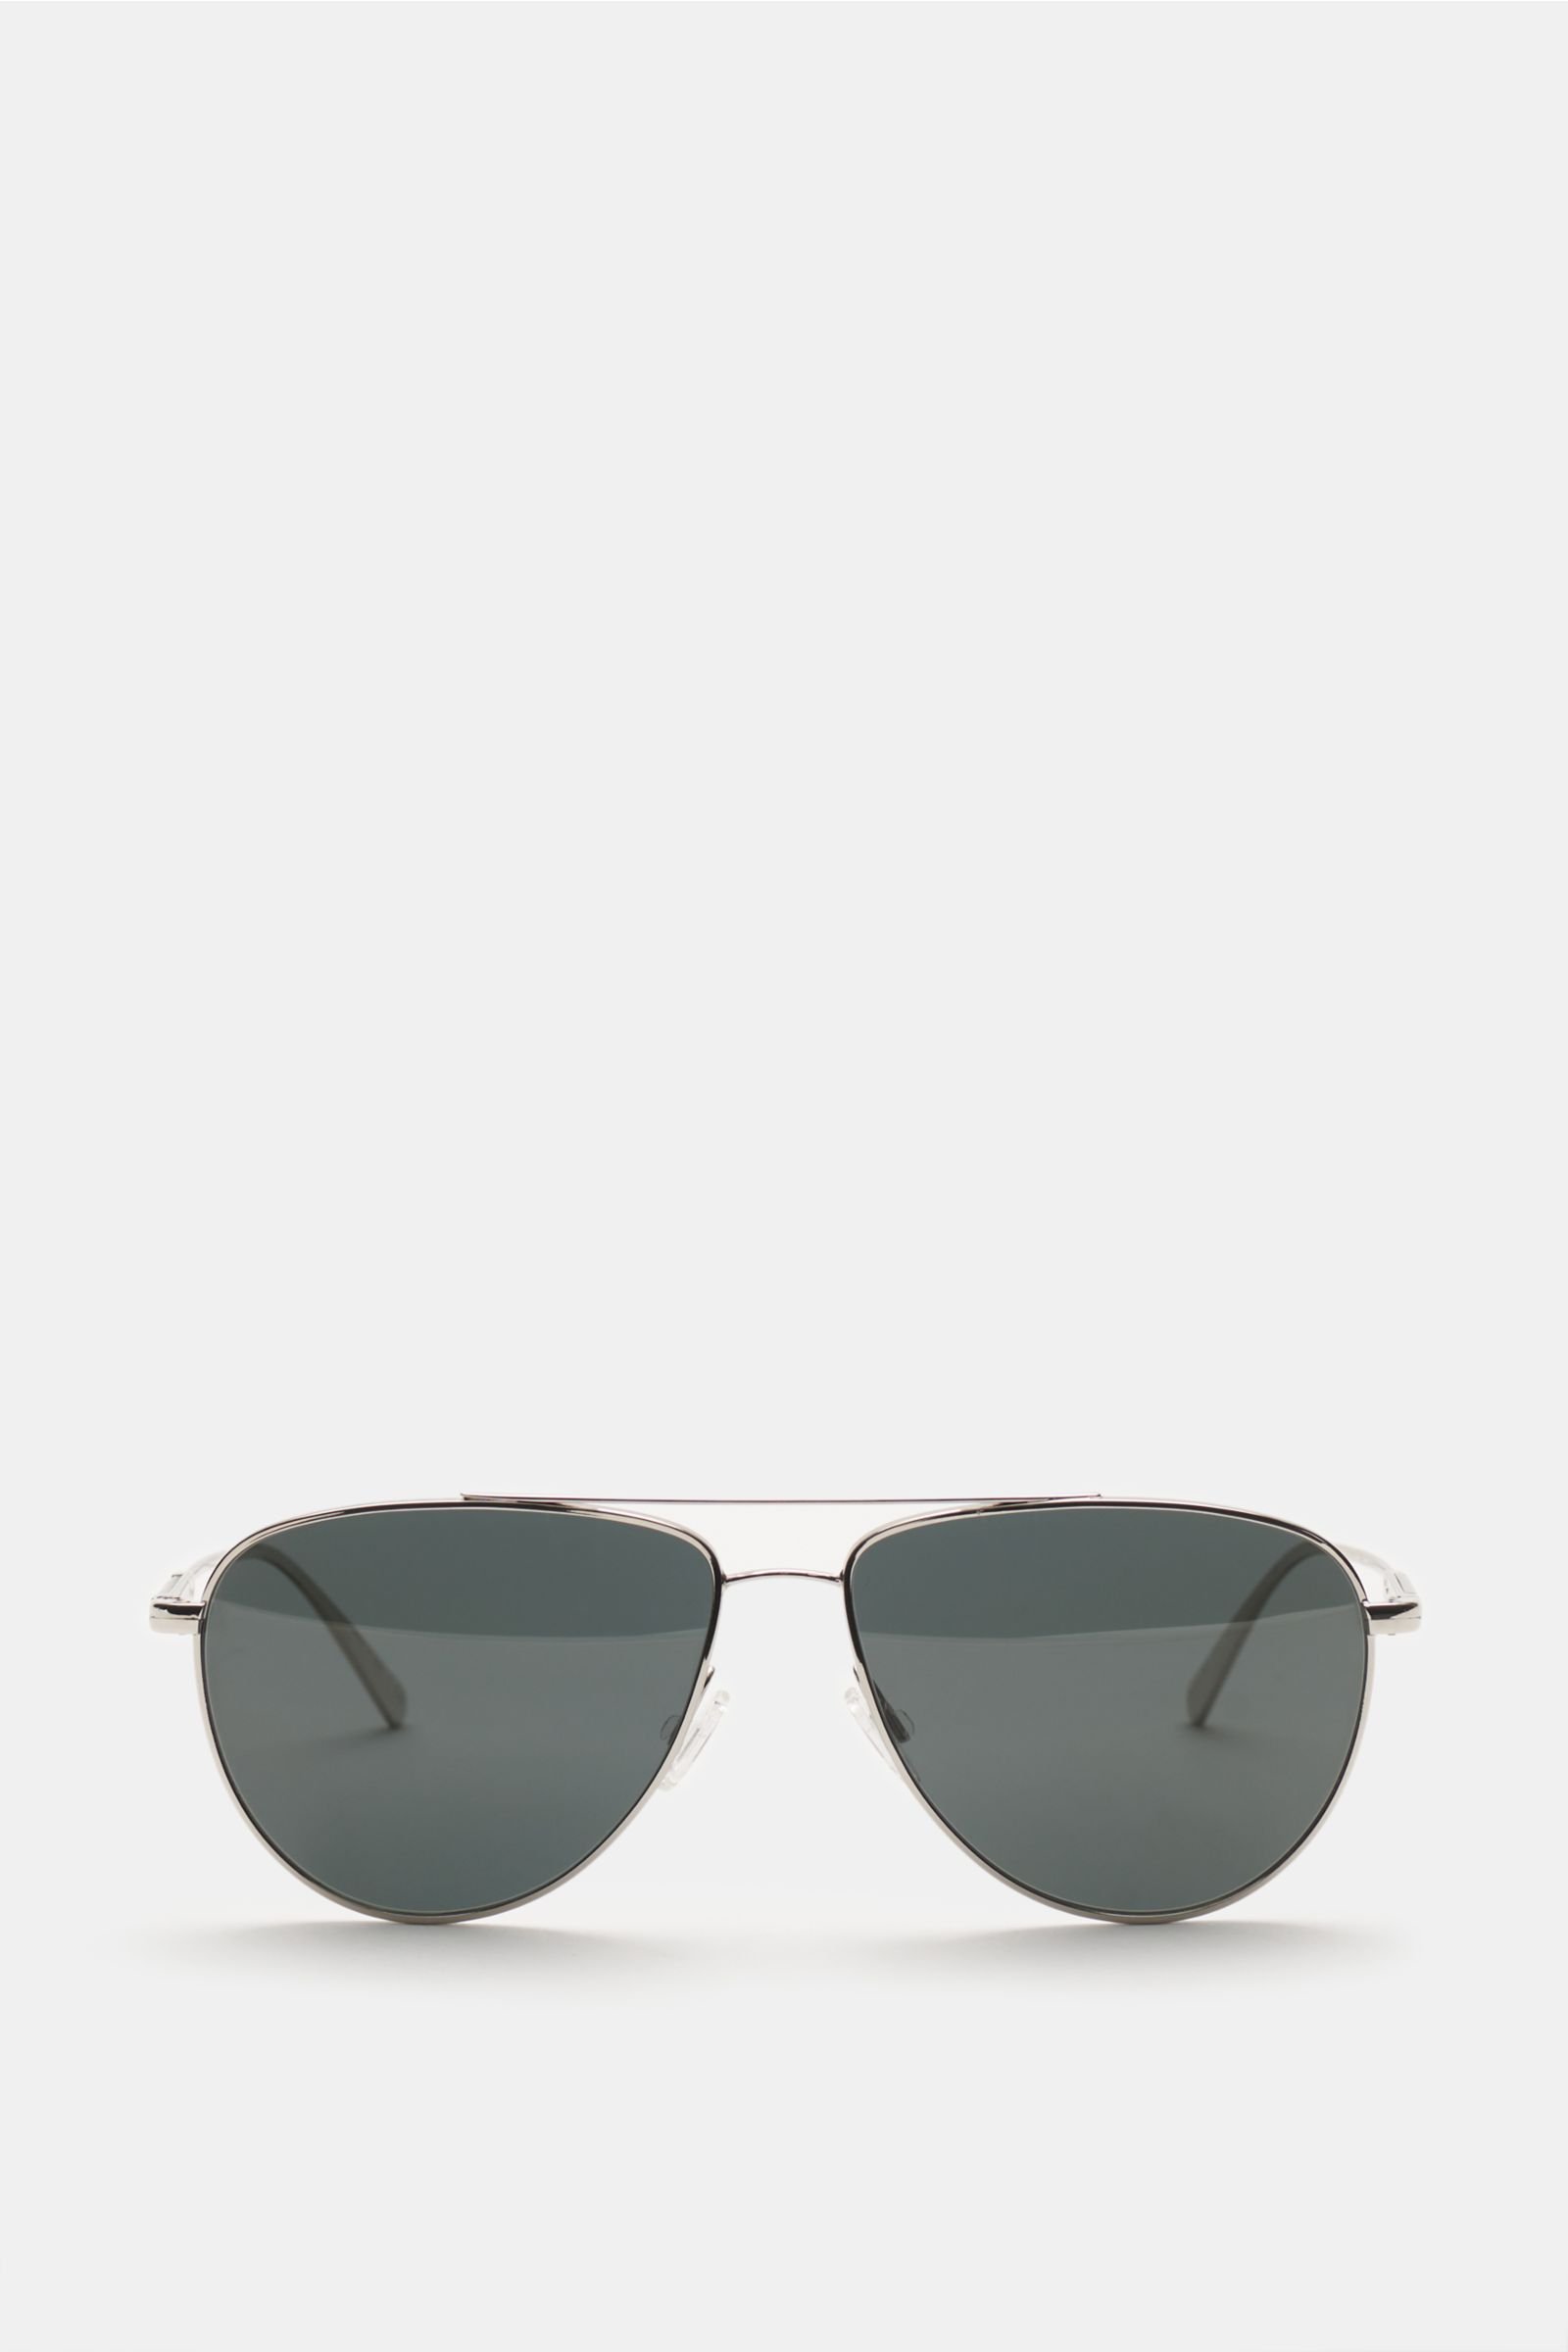 Sunglasses 'Disoriano' silver/anthracite